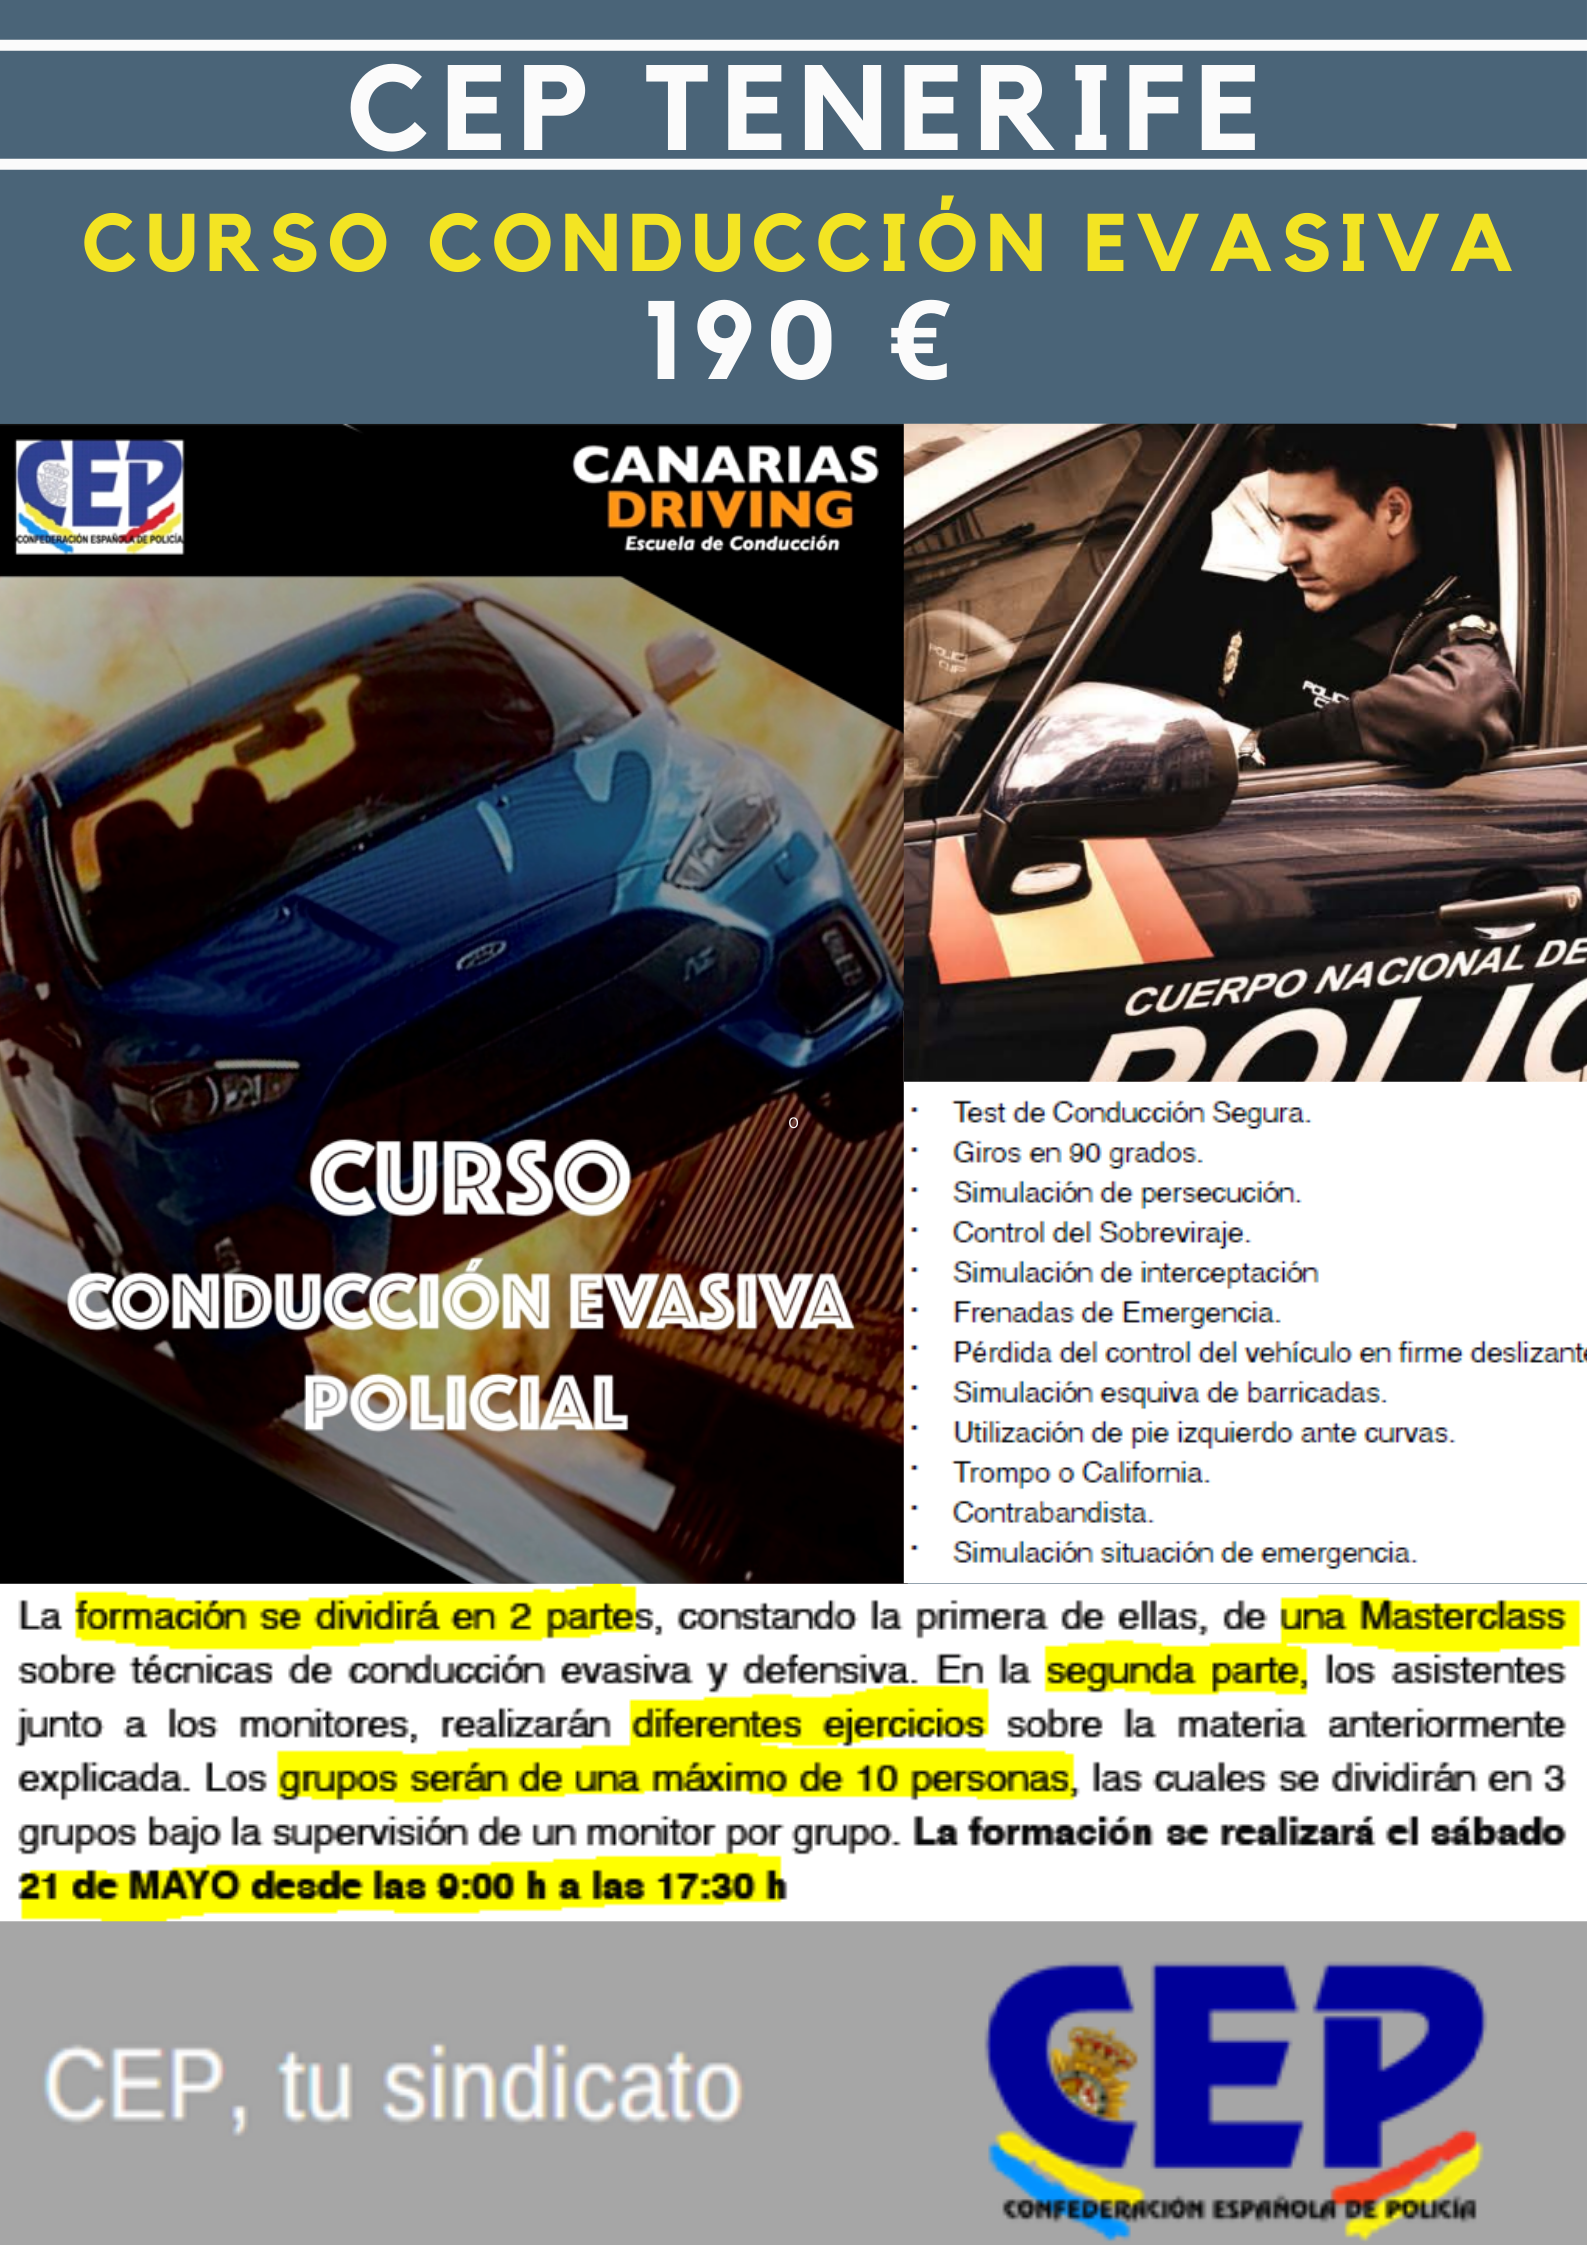 CEP Tenerife oferta formación teórica y práctica conducción evasiva policial